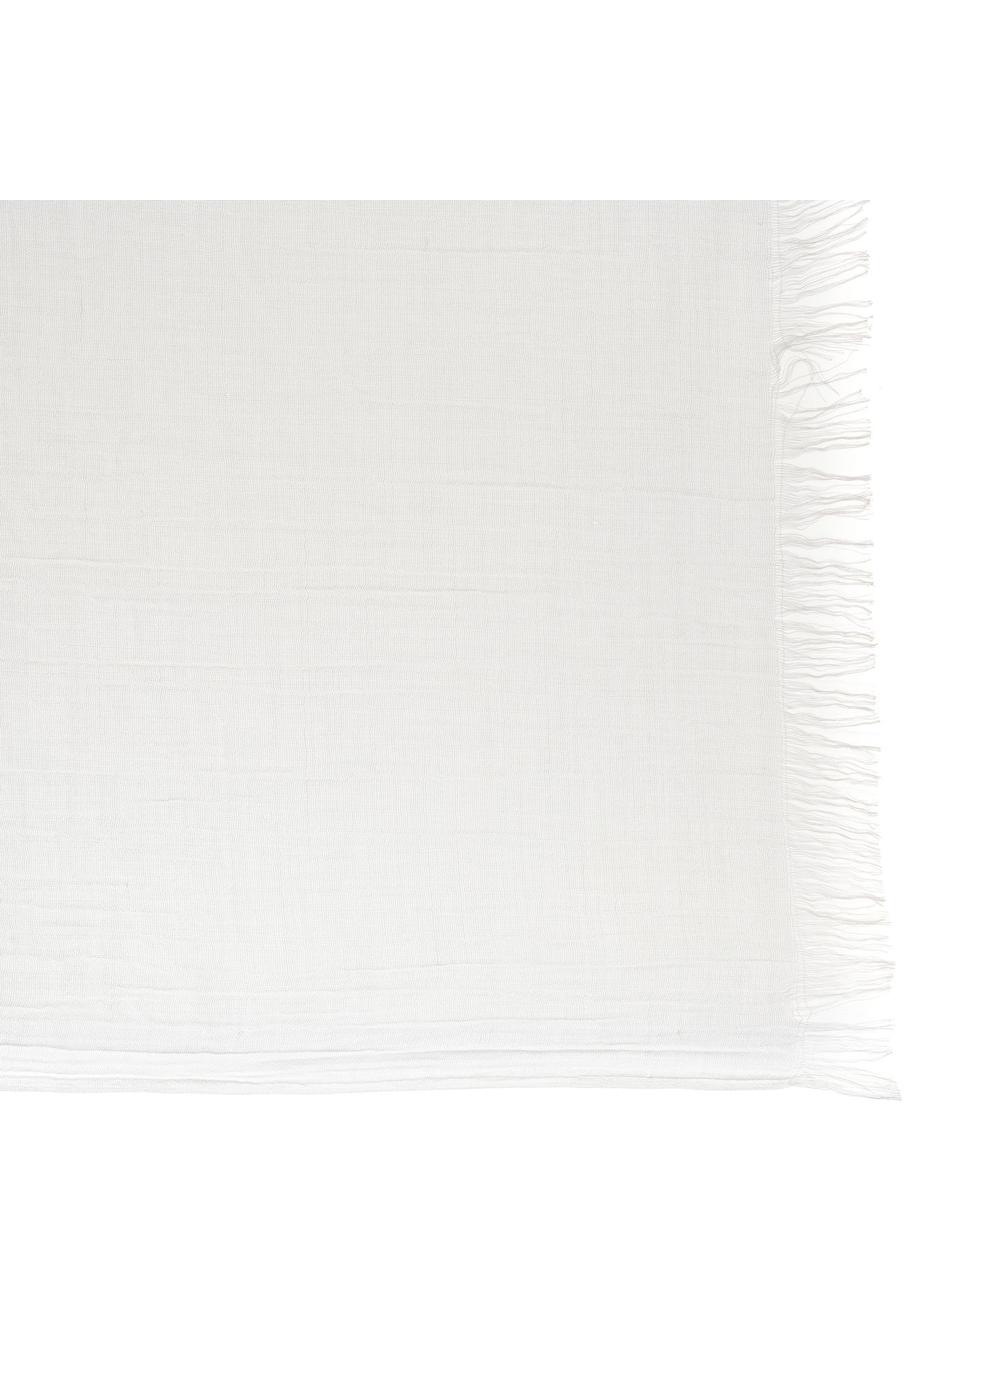 Biały duży szalik damski SZADT-0171-11(W24)